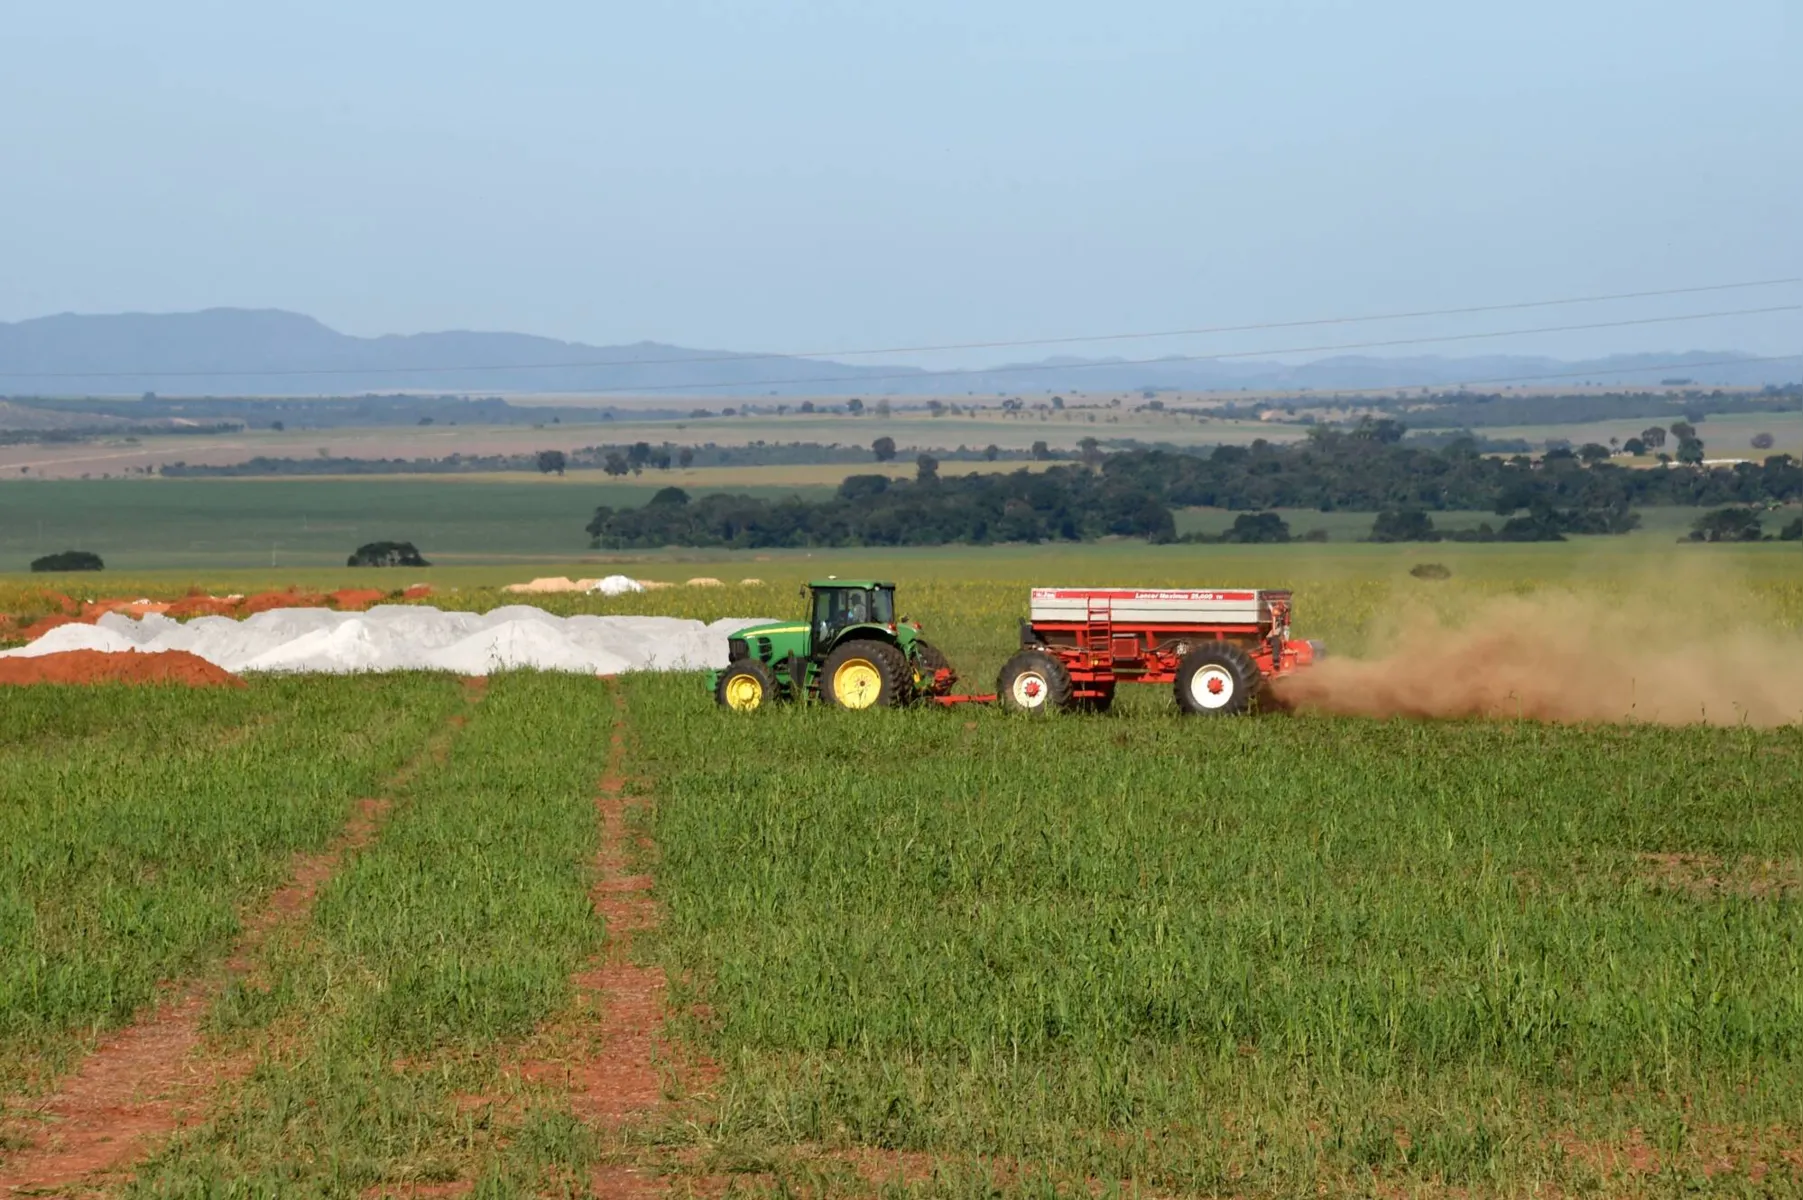 Em Goiás, fazenda utiliza remineralizadores. O setor agrícola brasileiro está, cada vez mais, se voltando para alternativas naturais